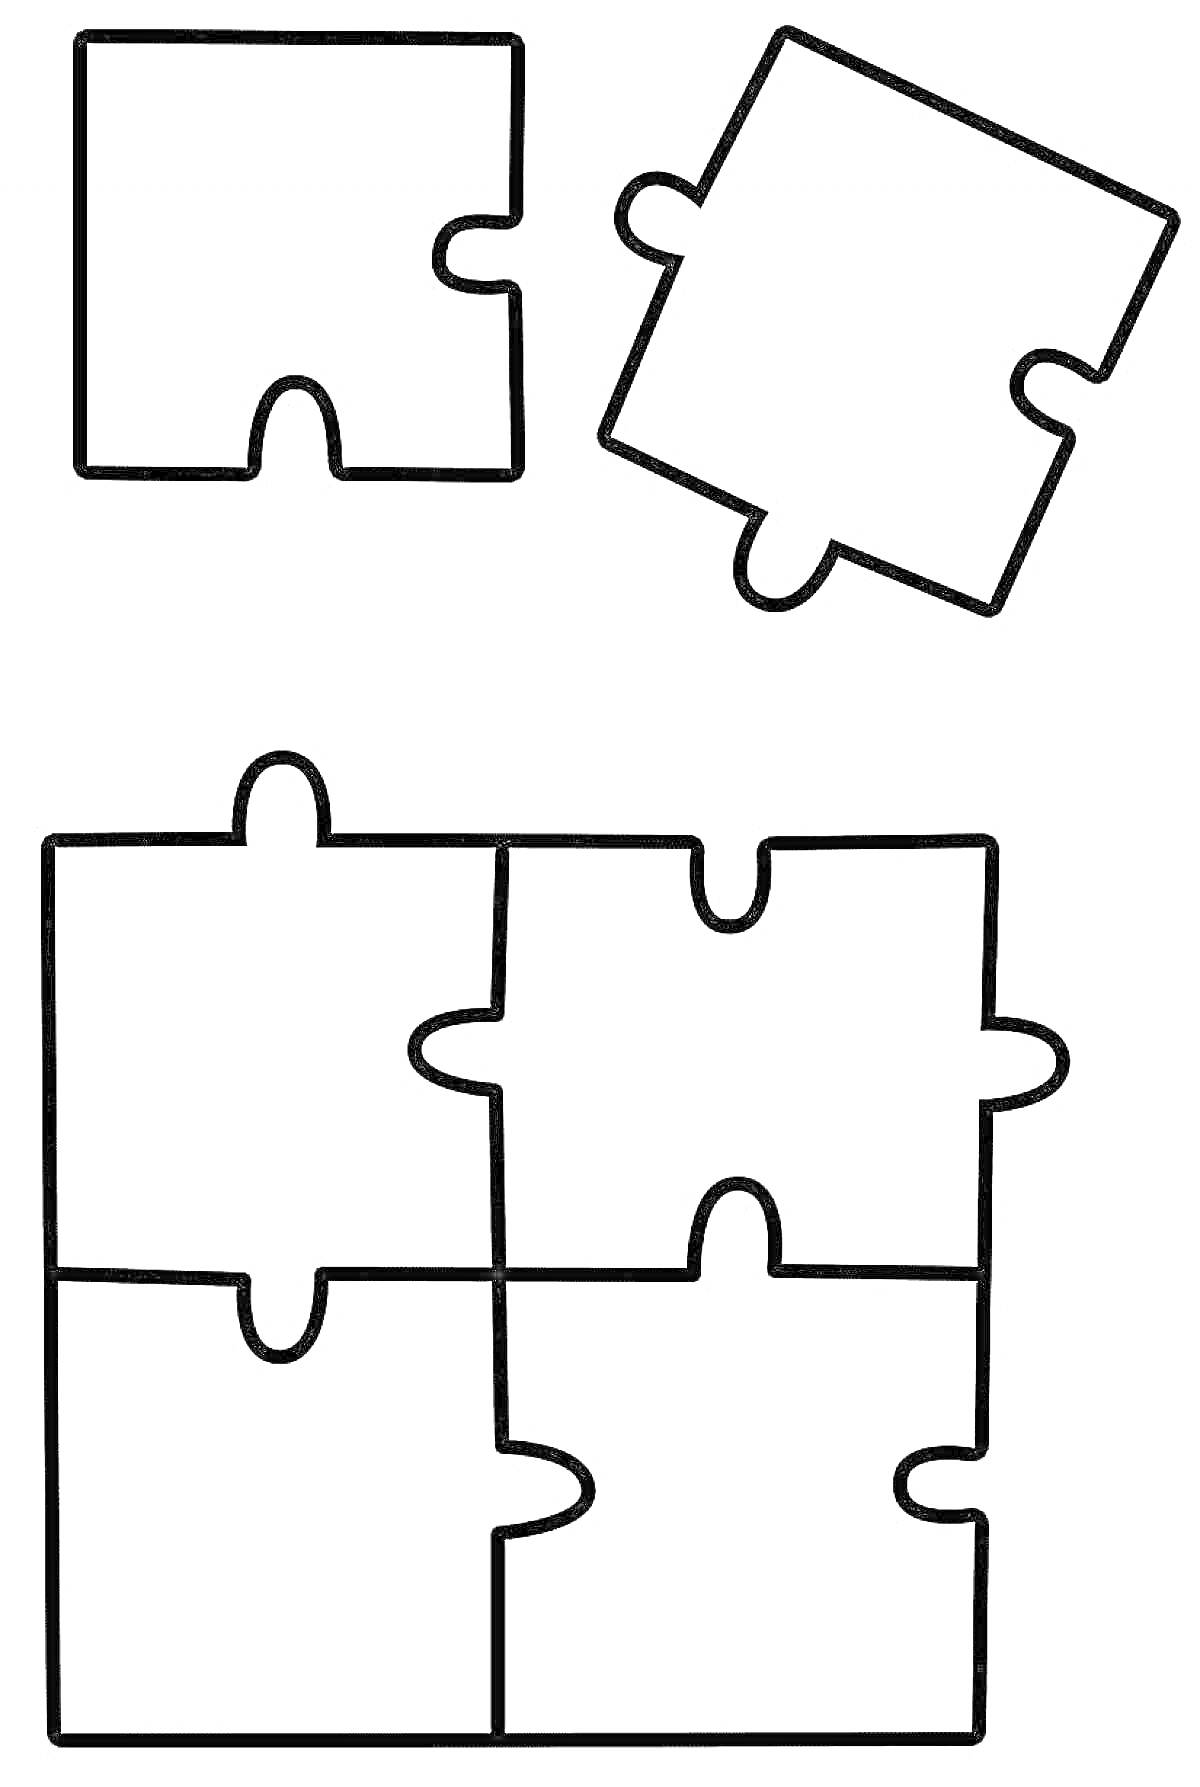 Пазлы с четырьмя элементами, два отдельных элемента и собранный квадрат из четырех частей